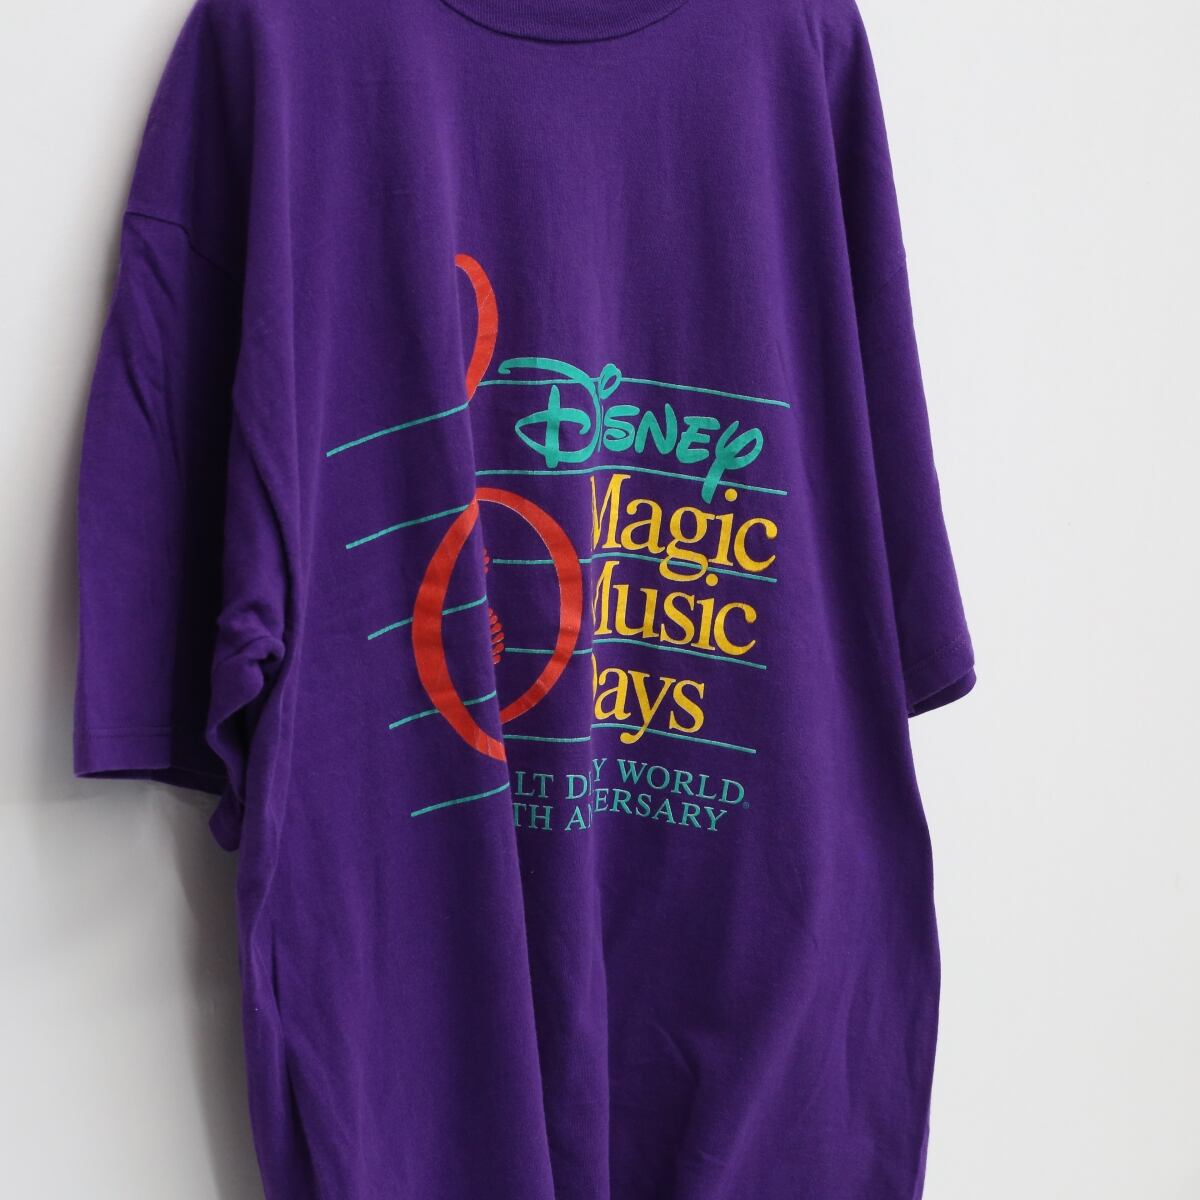 【クリーニング済】Disney Magic Music Days Tシャツ 半袖